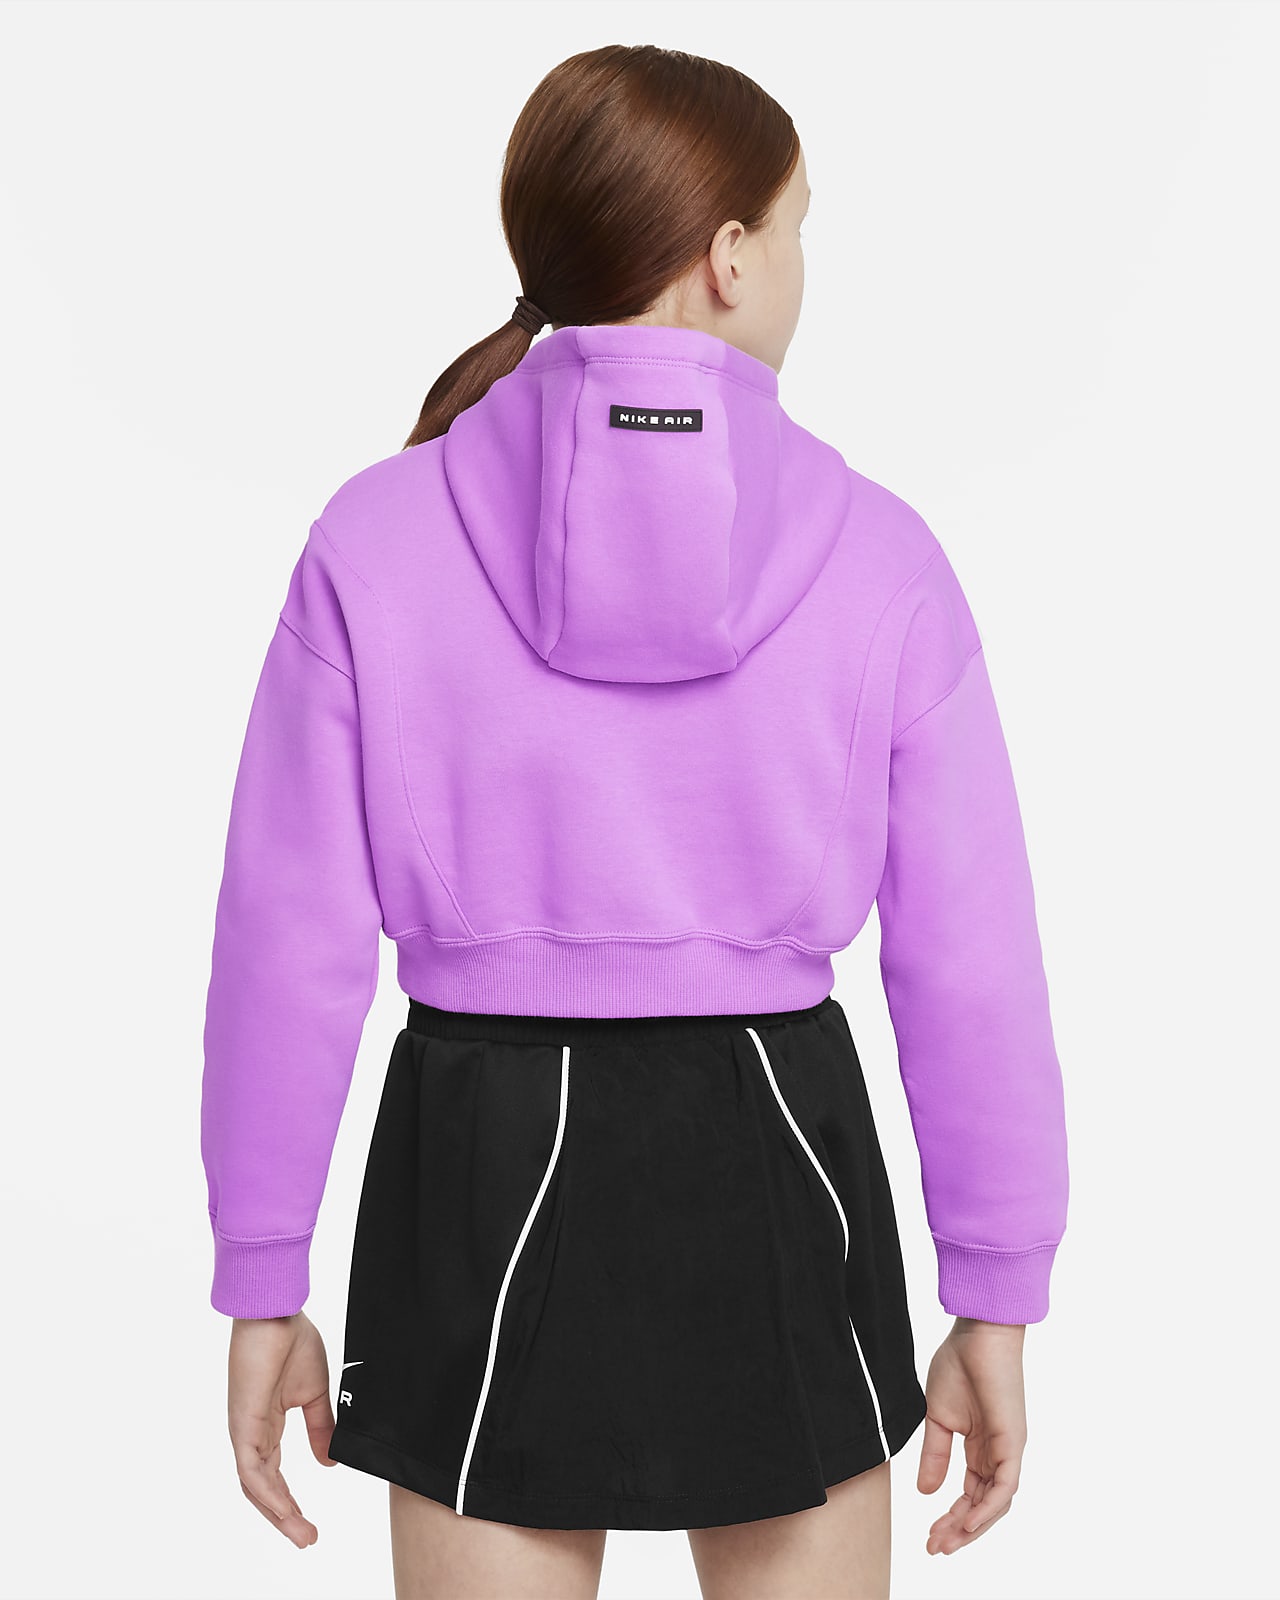 Grand roman Springplank Nike Air Korte hoodie van sweatstof voor meisjes. Nike NL